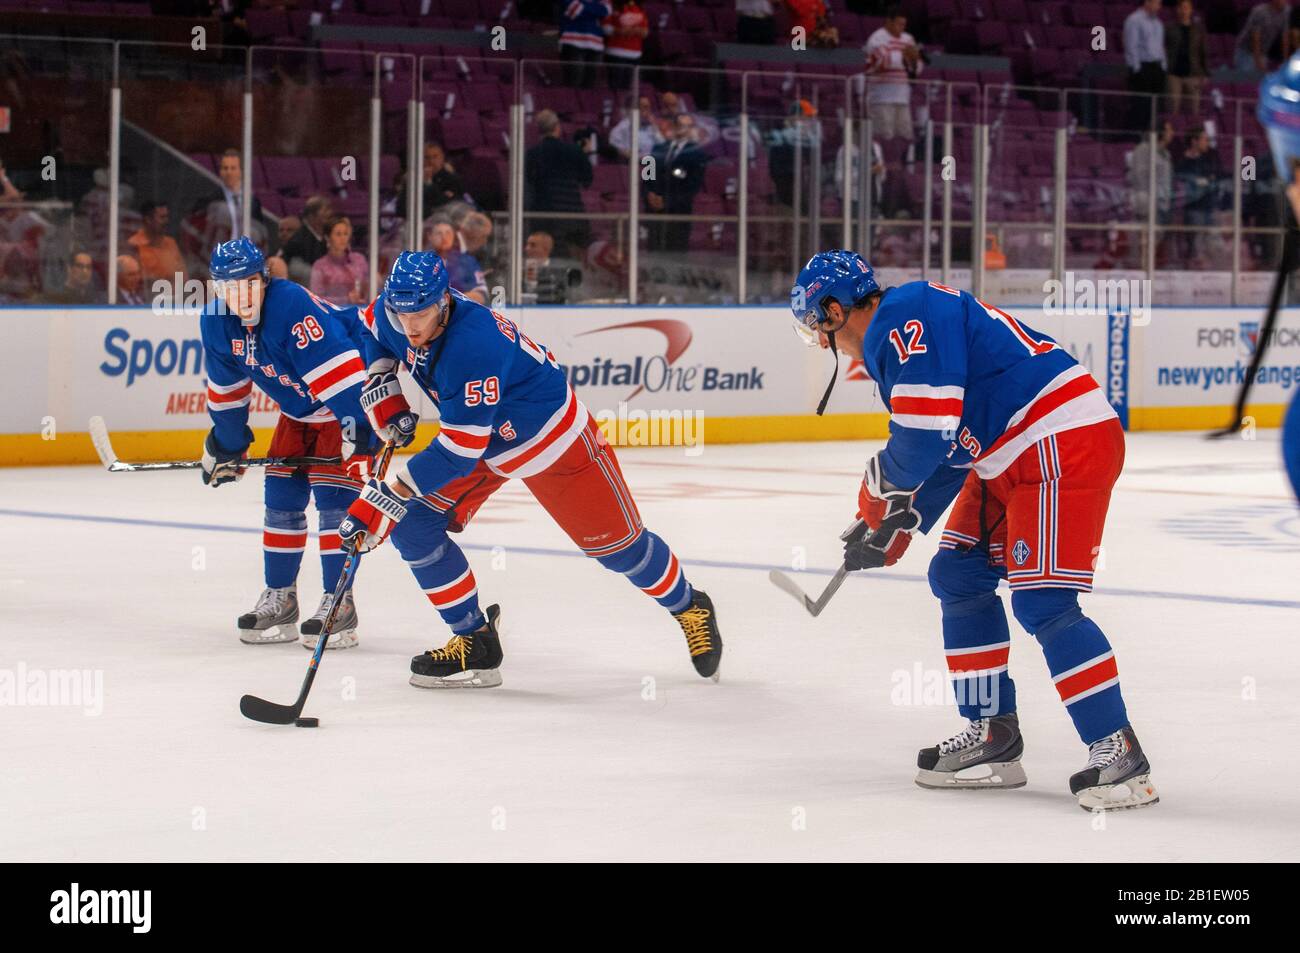 Ligue de hockey sur glace NHL match Rangers au MSG. Lorsque vous parlez des grandes salles de sport, Madison Square Garden devrait être près du haut de la liste. H Banque D'Images